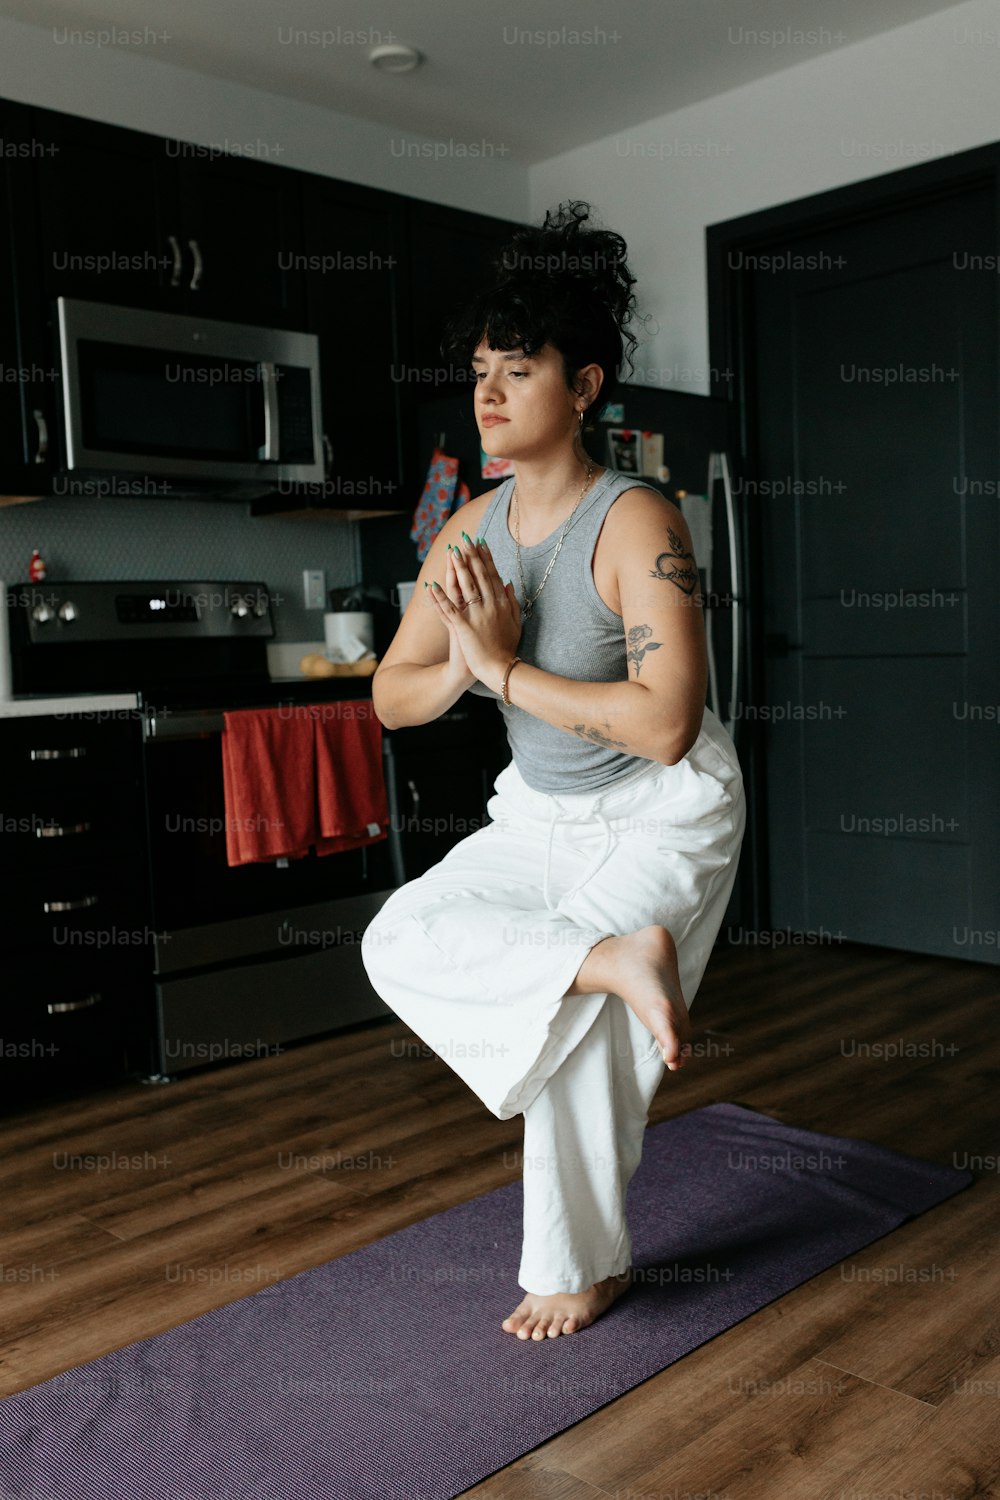 Ein Mann macht Yoga in einer Küche